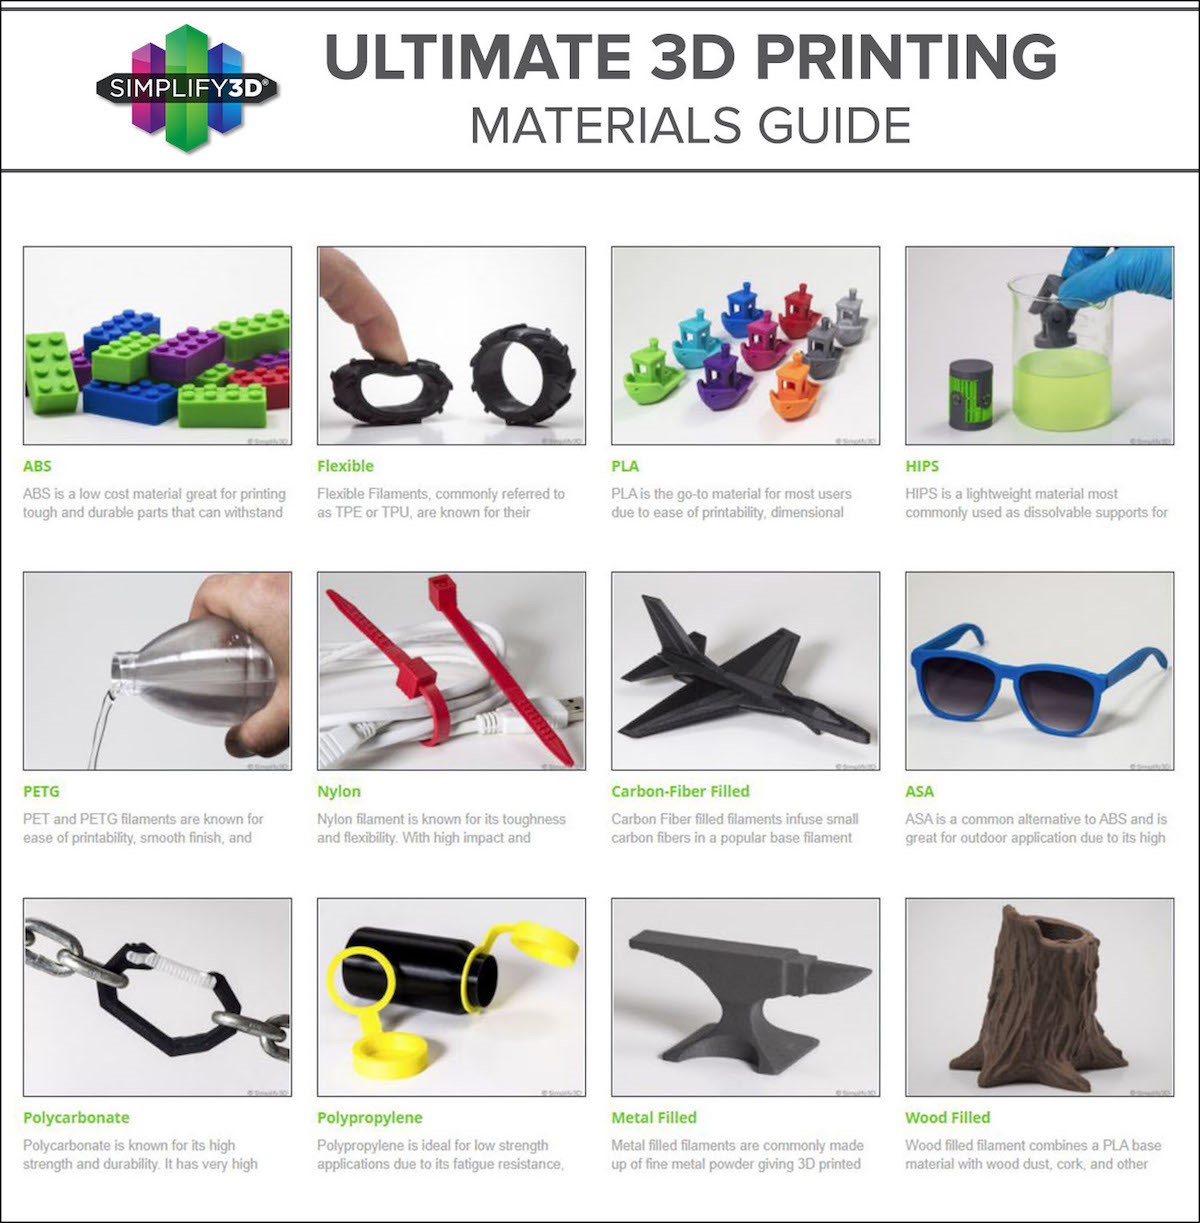 Cette imprimante 3D prend en charge de nouveaux types de matériaux